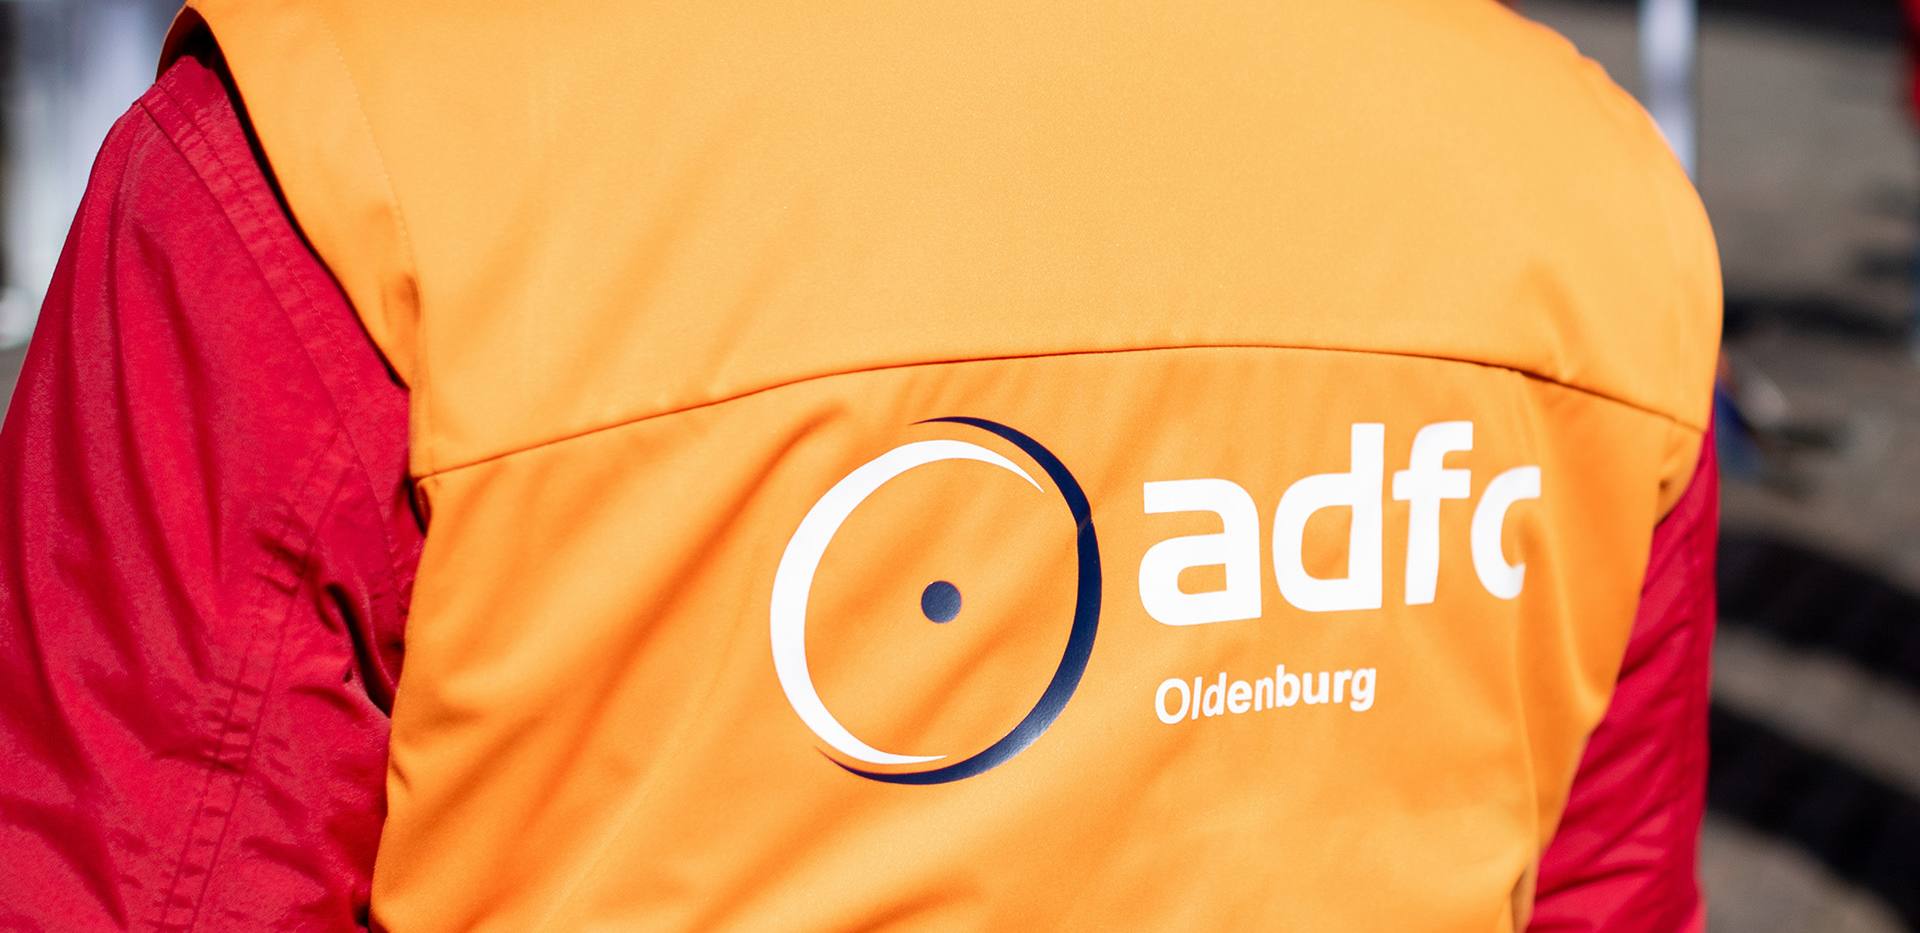 ADFC Oldenburg